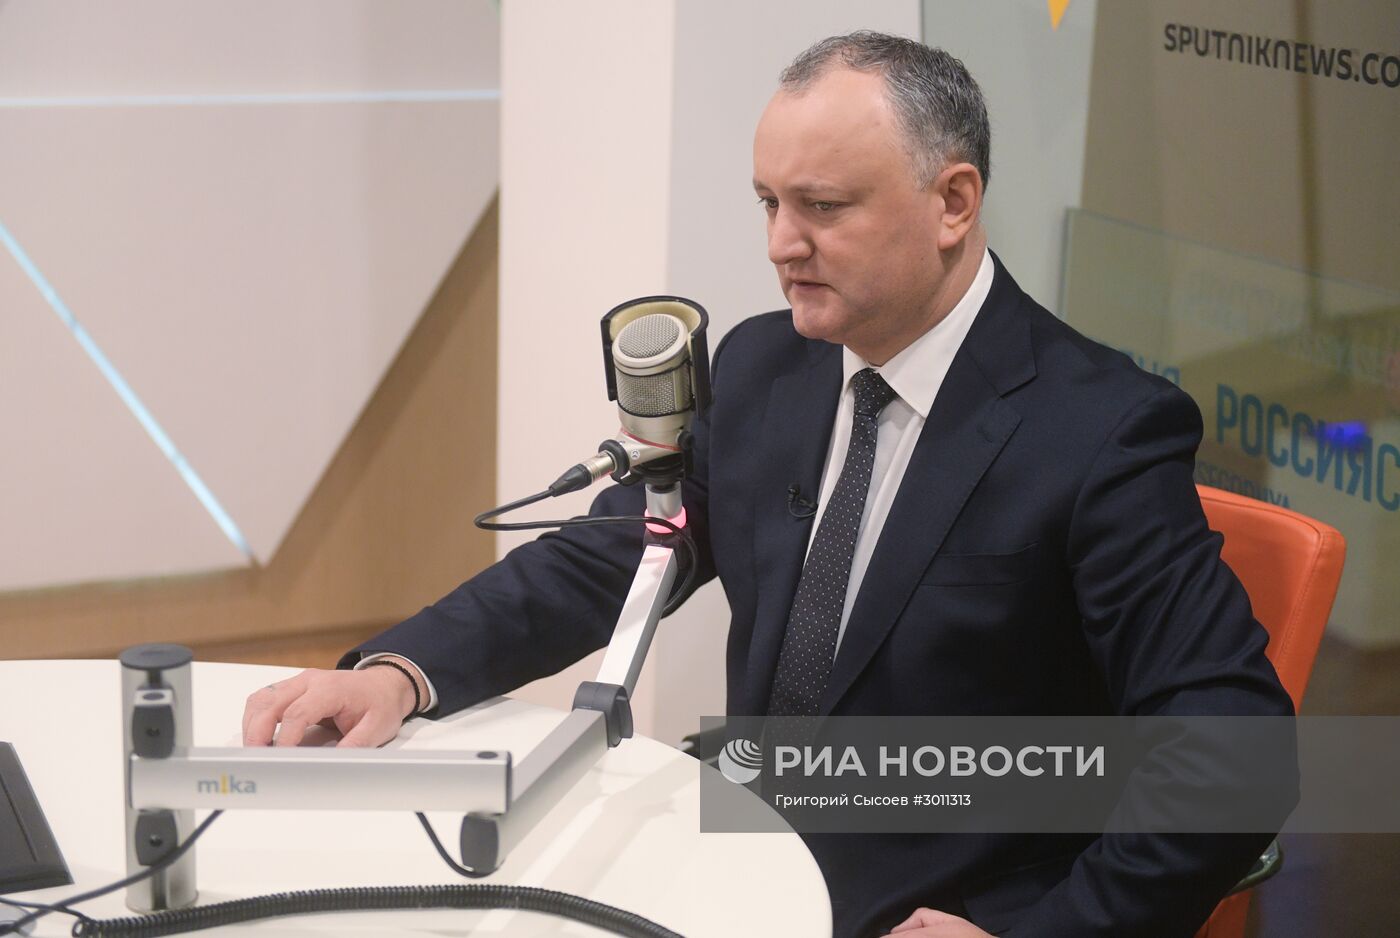 Президент Молдавии И. Додон дал интервью гендиректору МИА "Россия сегодня" Д. Киселеву